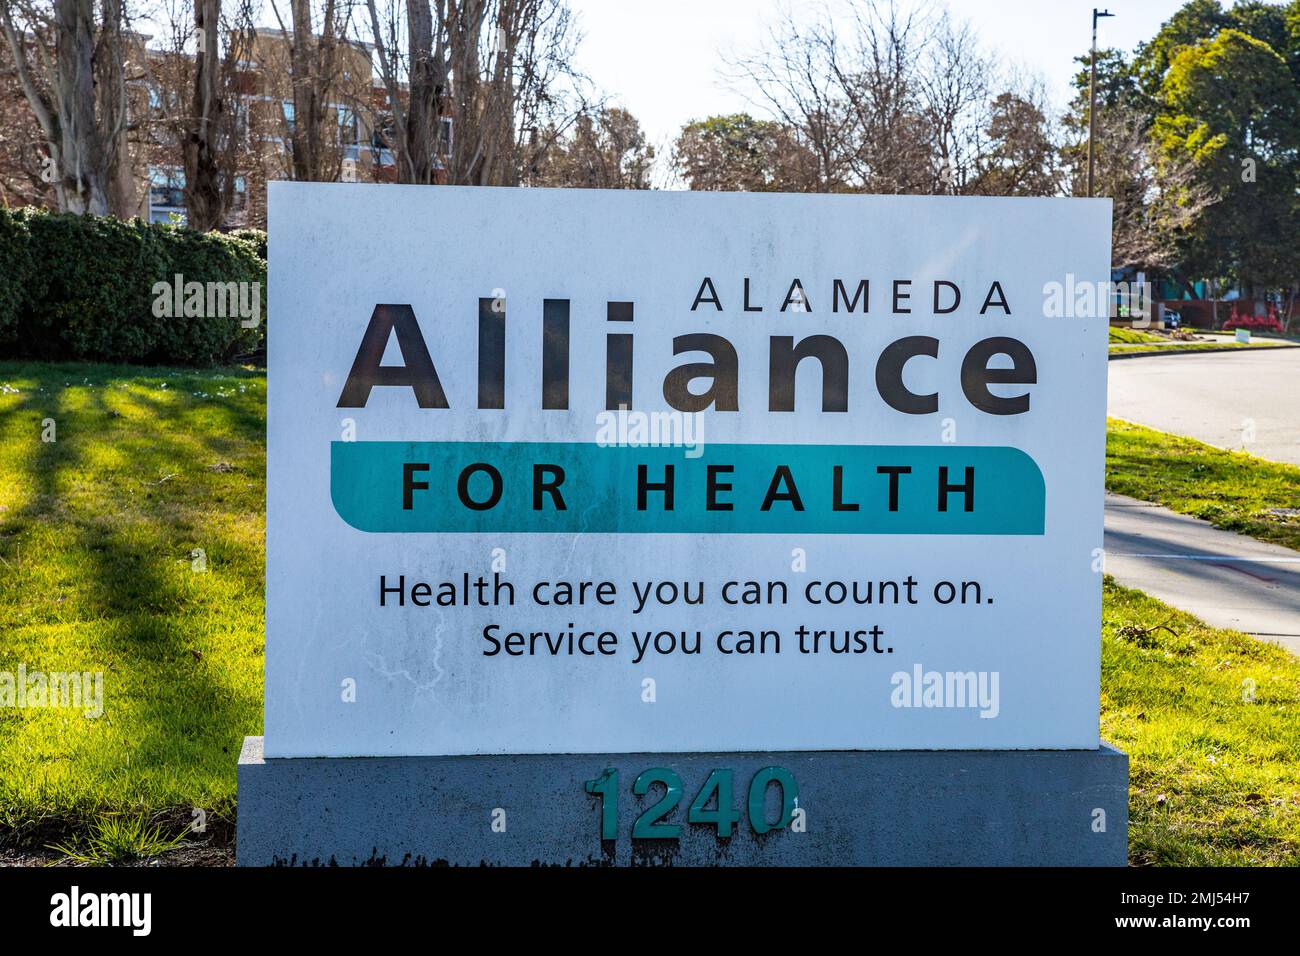 Alameda Alliance for Health in Alameda California USA, Ein Gesundheitsplan für Personen mit niedrigem Einkommen. Stockfoto